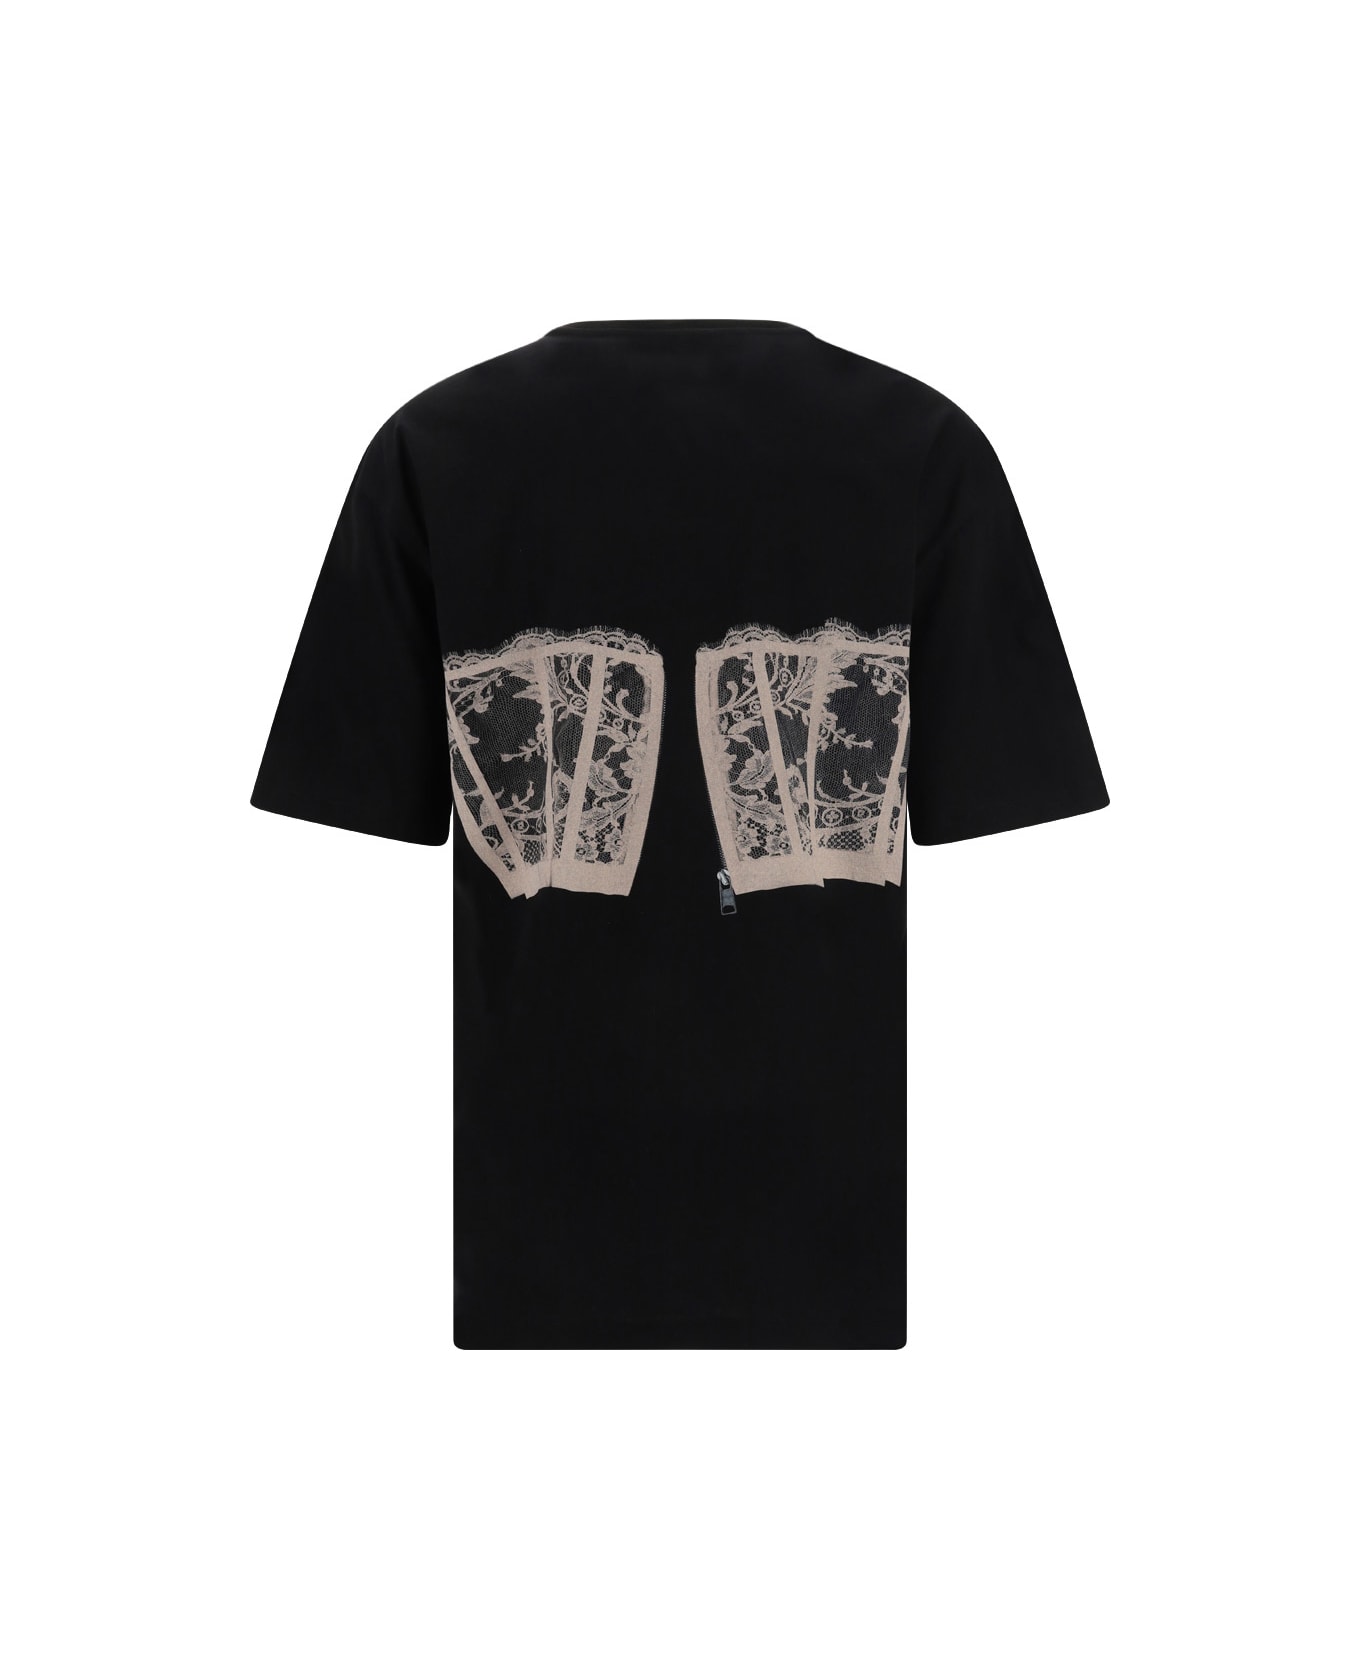 Alexander McQueen Lace Corset T-shirt - Black/shell